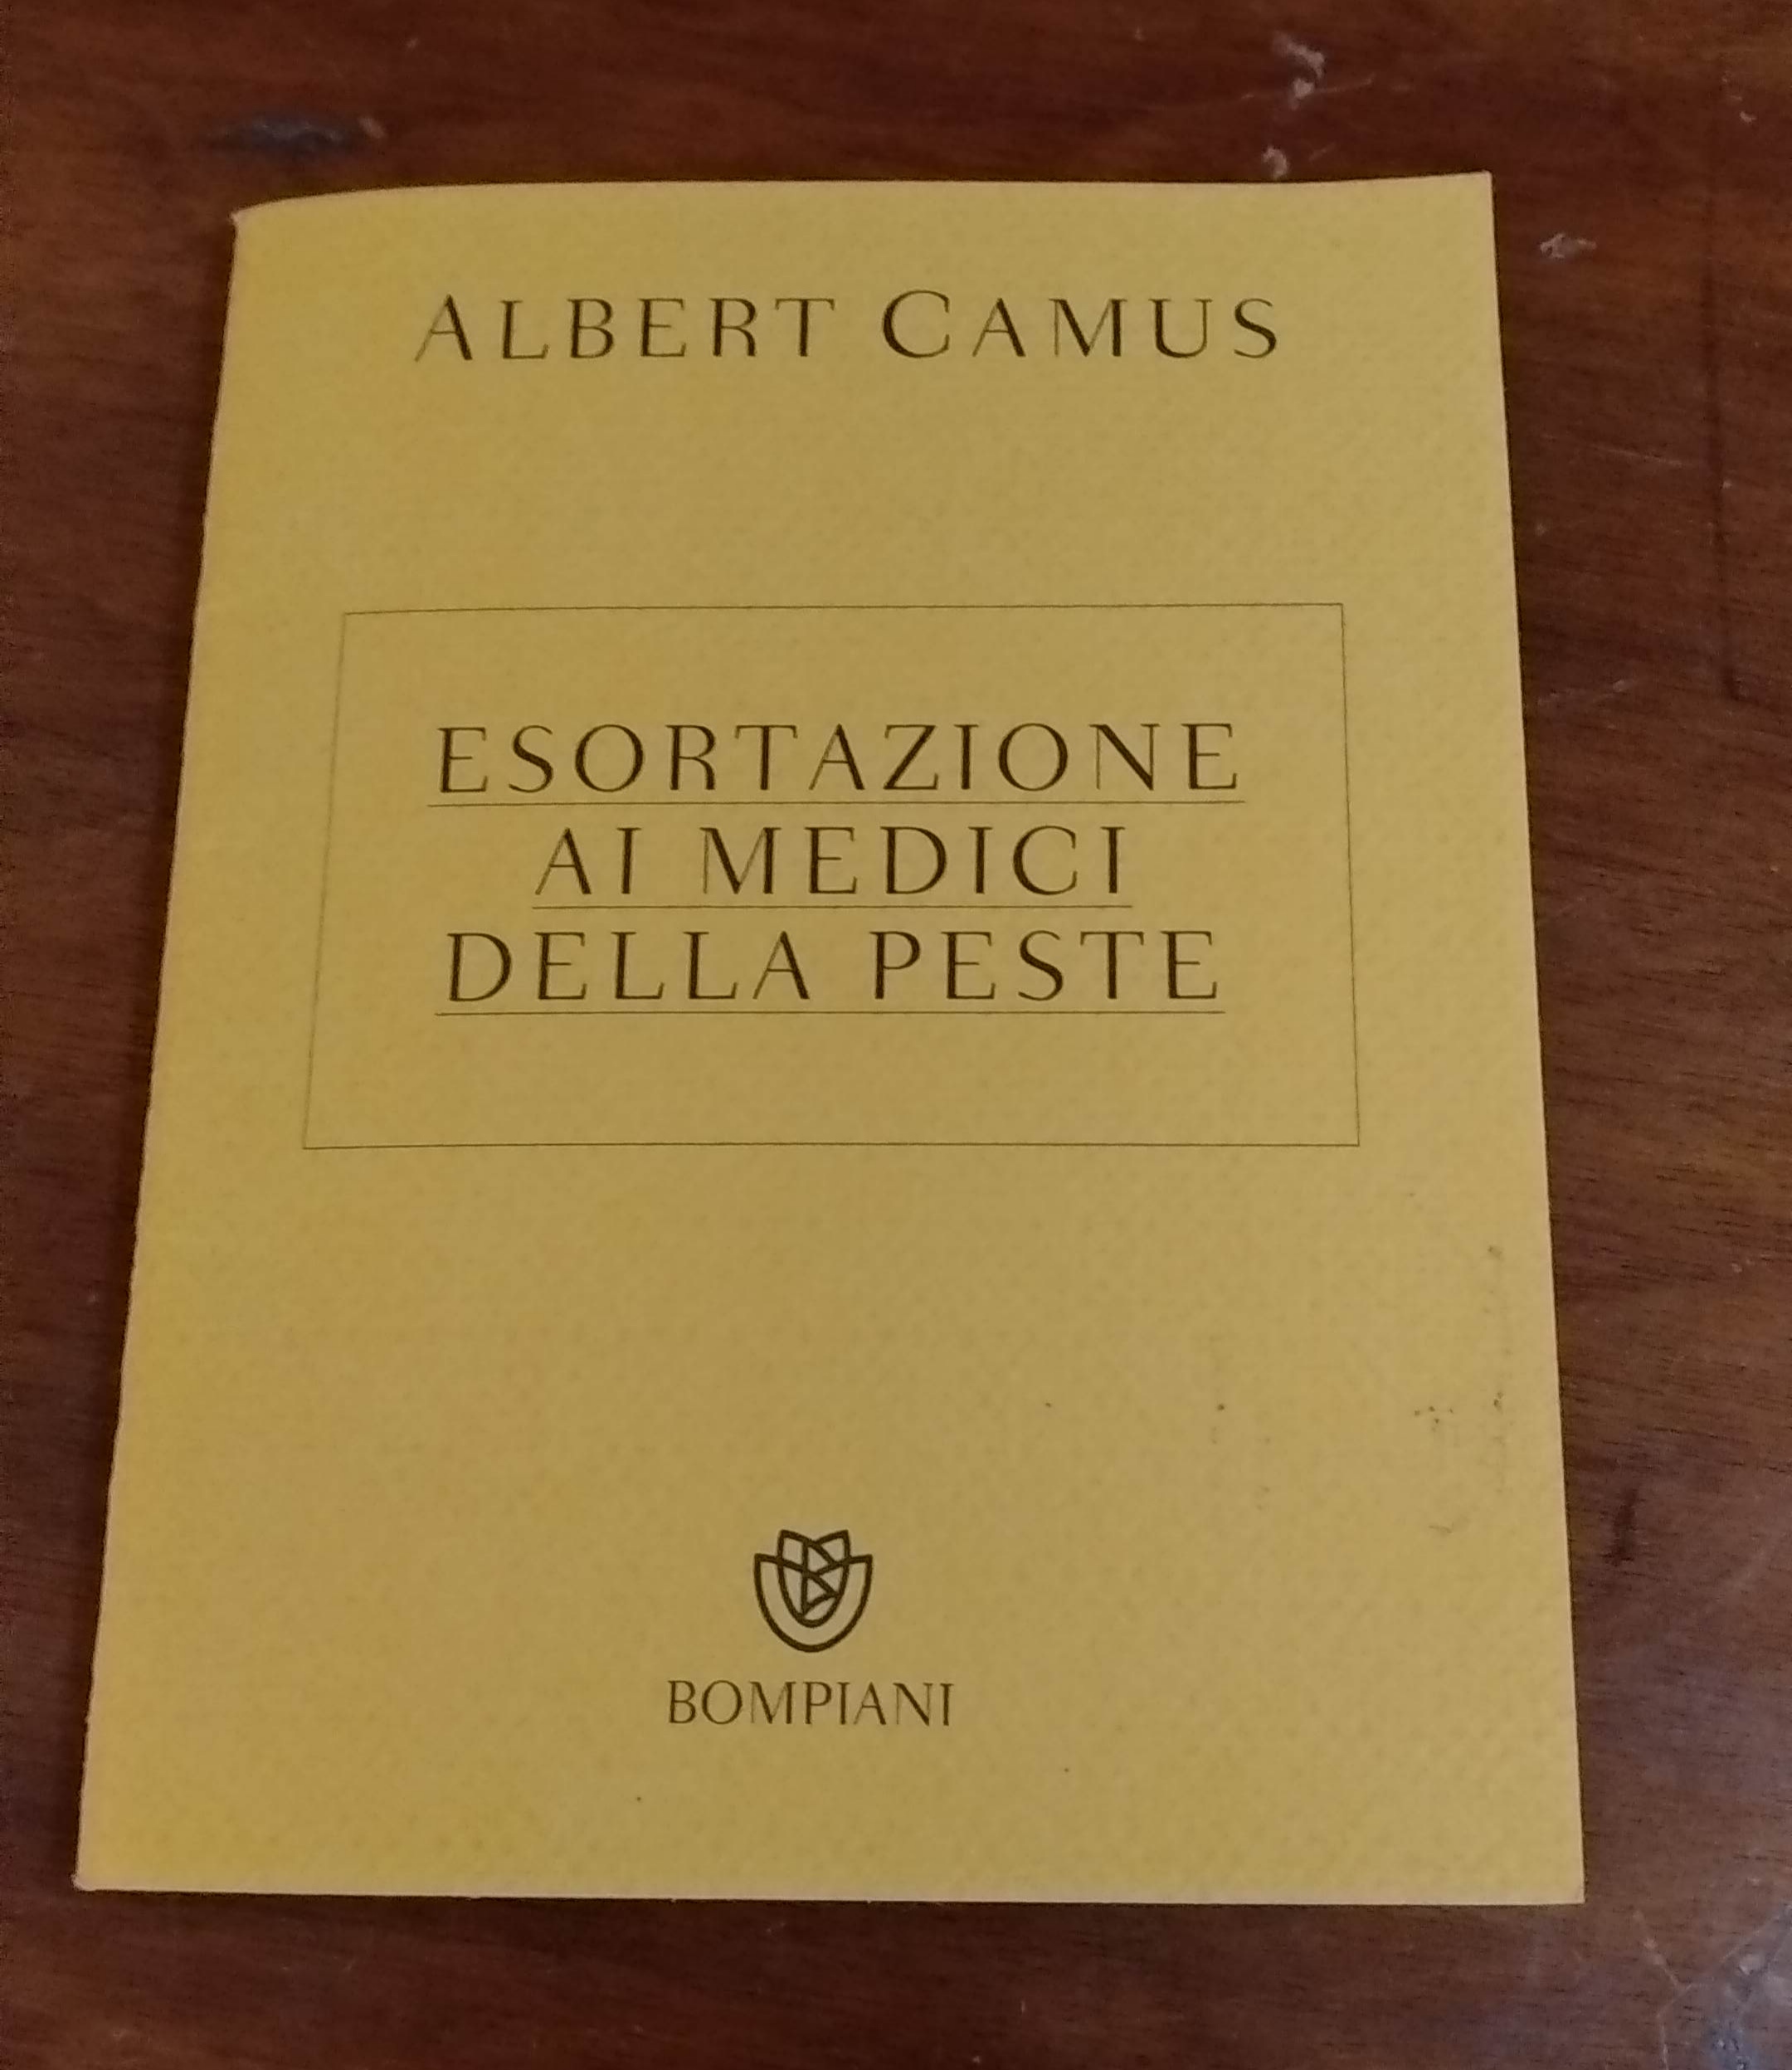 “Esortazione ai medici della peste”, di Albert Camus (Bompiani 2020) 25 €